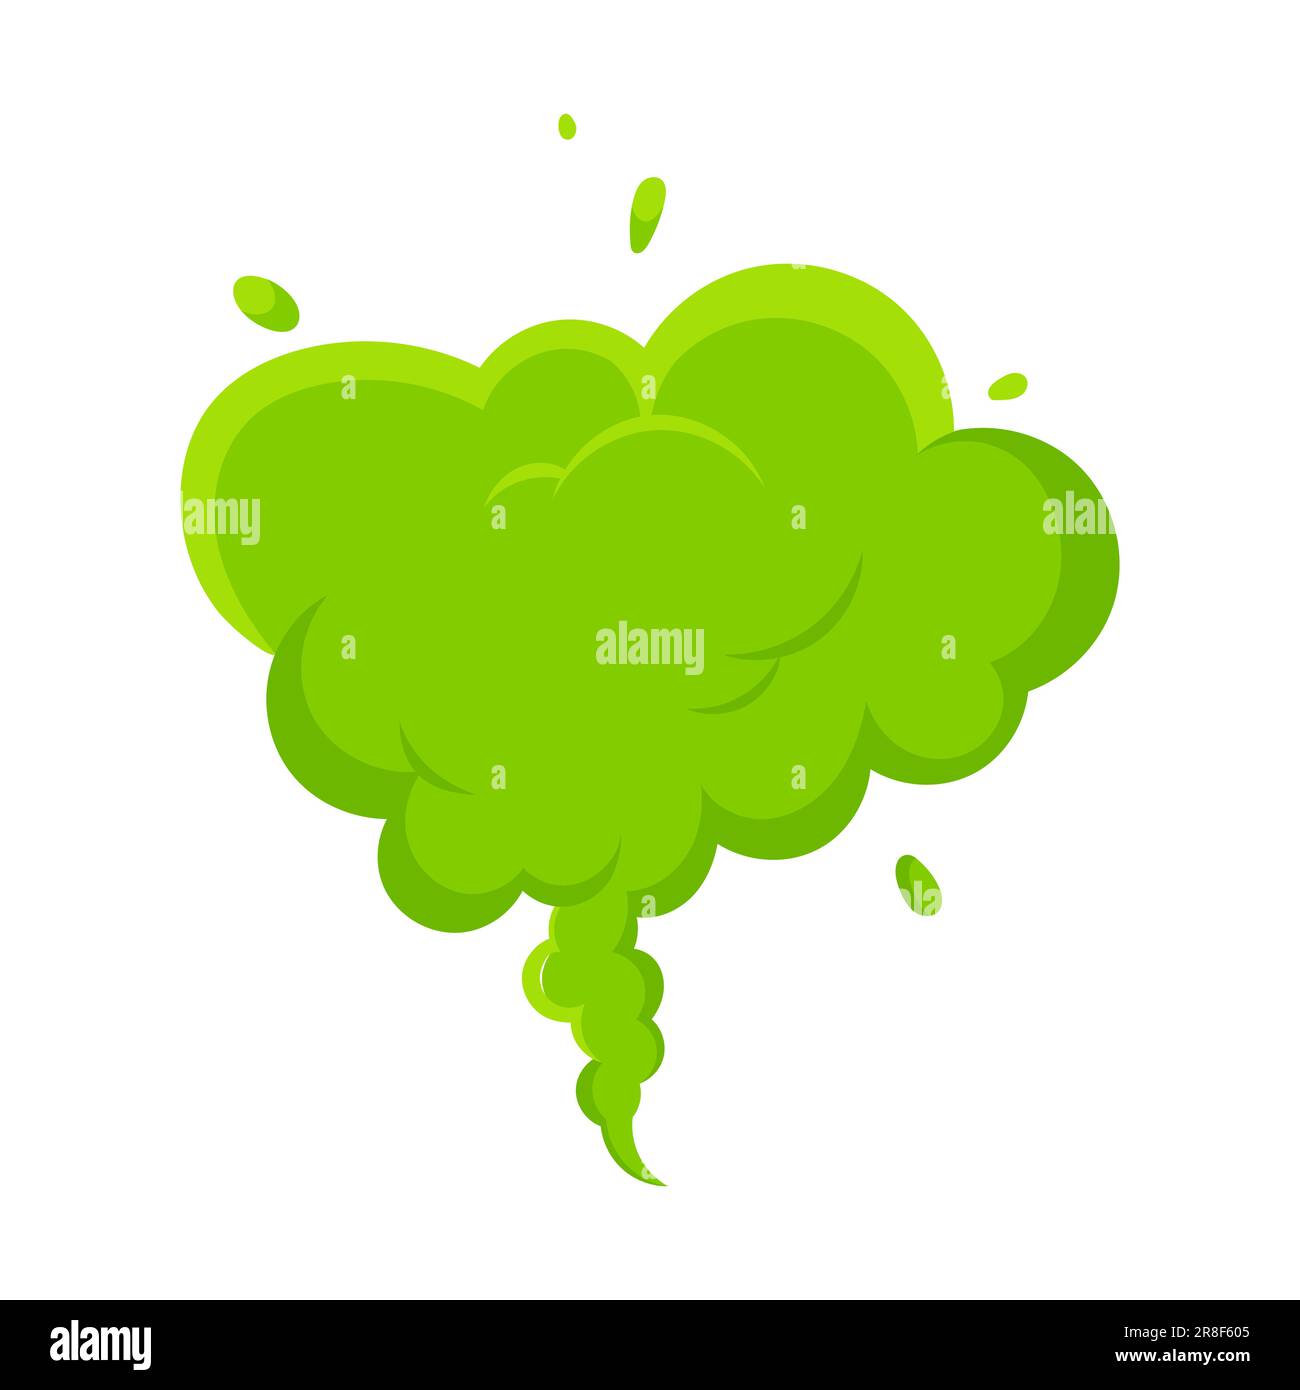 Olor verde dibujos animados humo o fart nubes diseño plano ilustración vectorial. Mal olor o olor tóxico dibujos animados humo nube aislada en la espalda blanca Ilustración del Vector